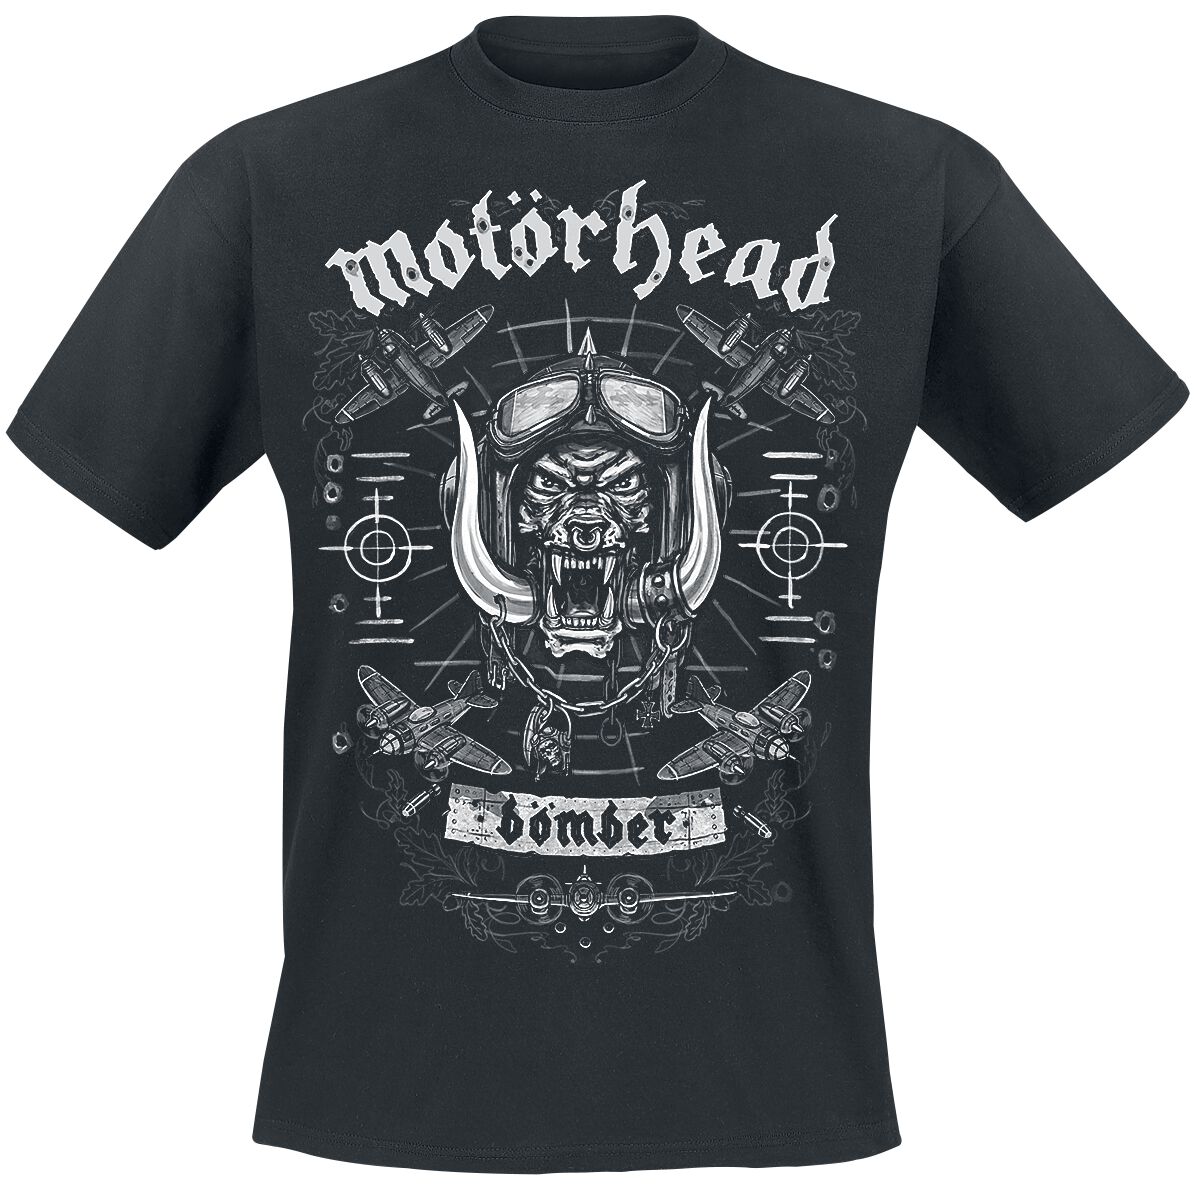 Motörhead T-Shirt - Bomber Planes - S bis XXL - für Männer - Größe M - schwarz  - Lizenziertes Merchandise!